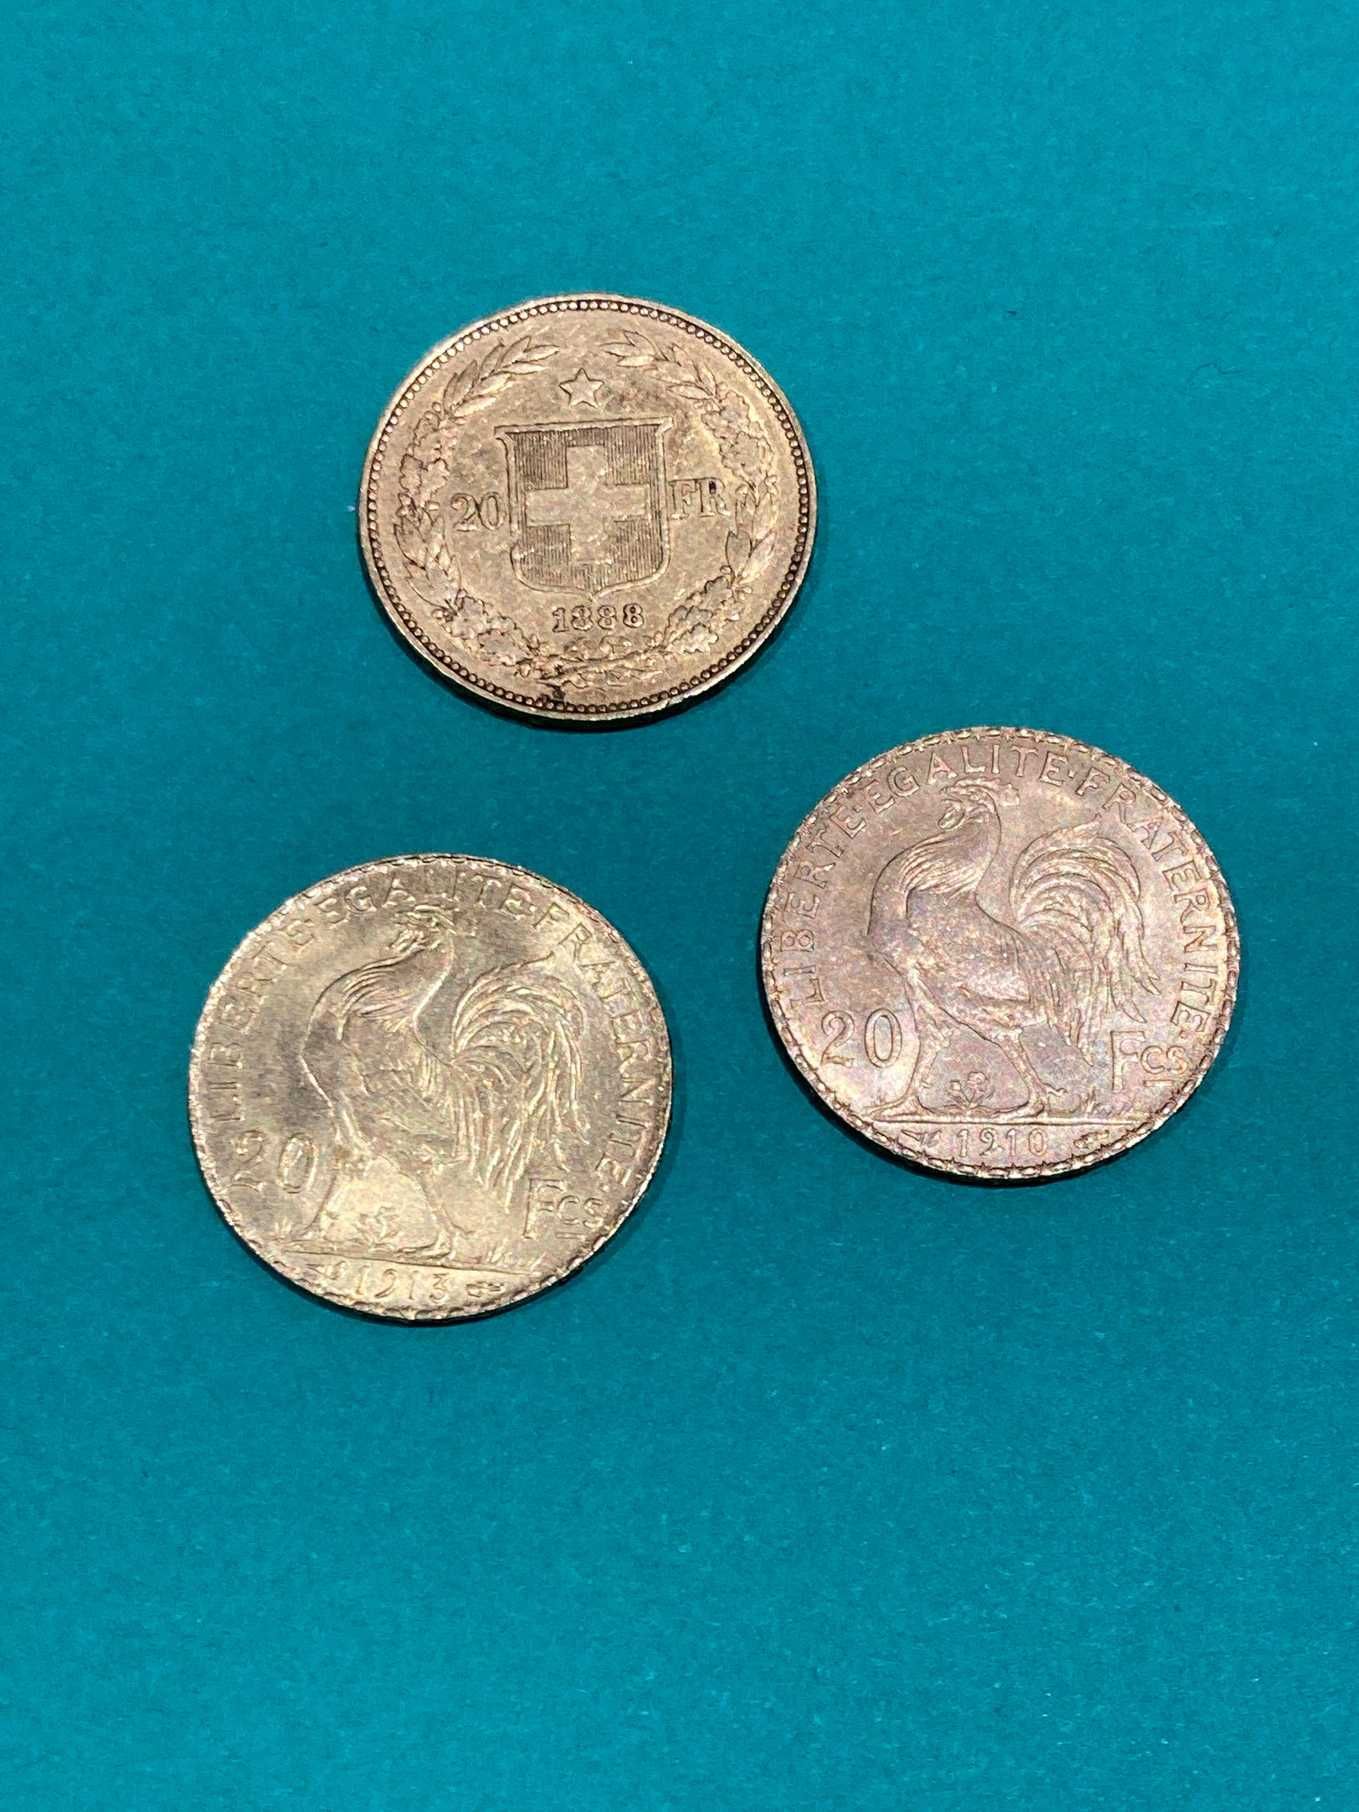 Null Lote de 3 monedas de oro de 20fr (1910-1913 y 1883)